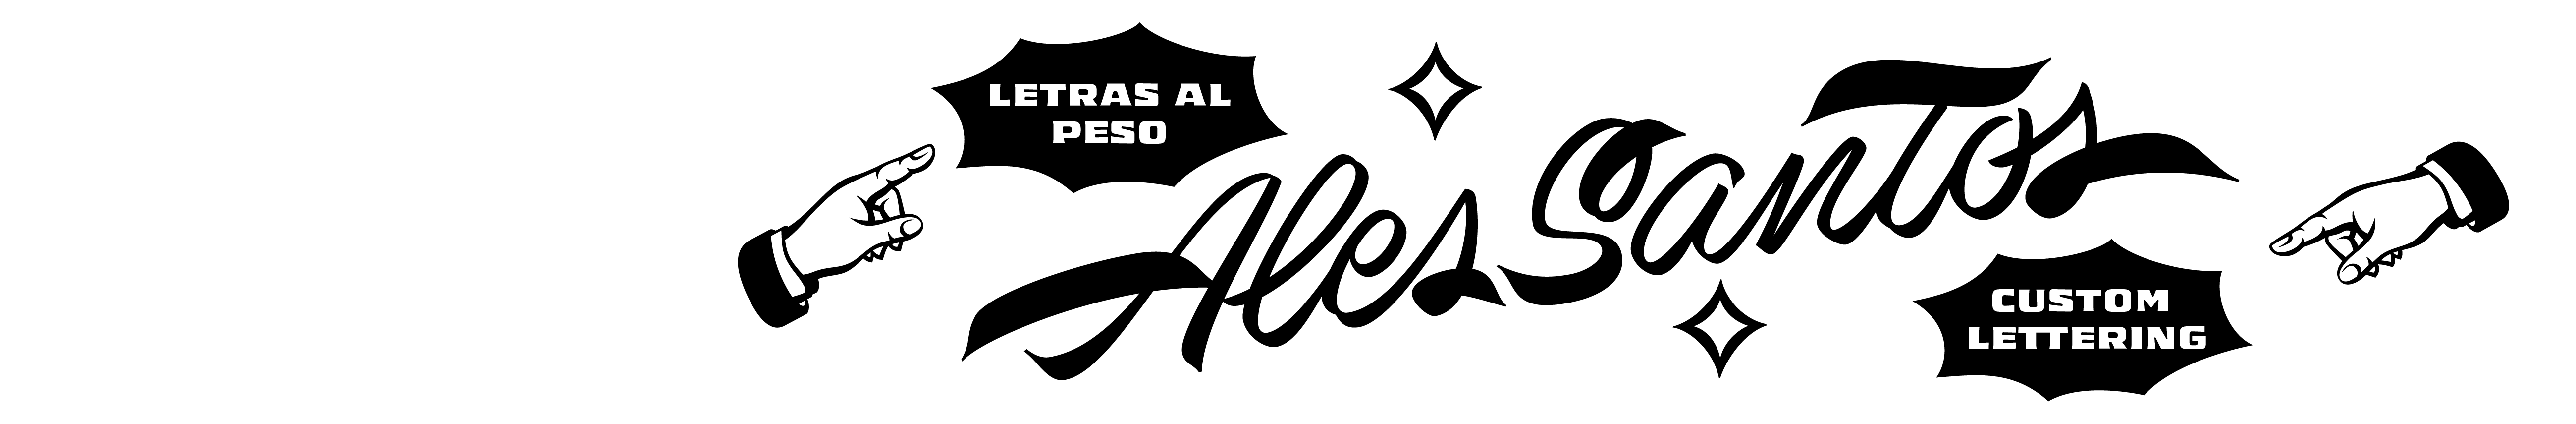 Ales Santos's profile banner